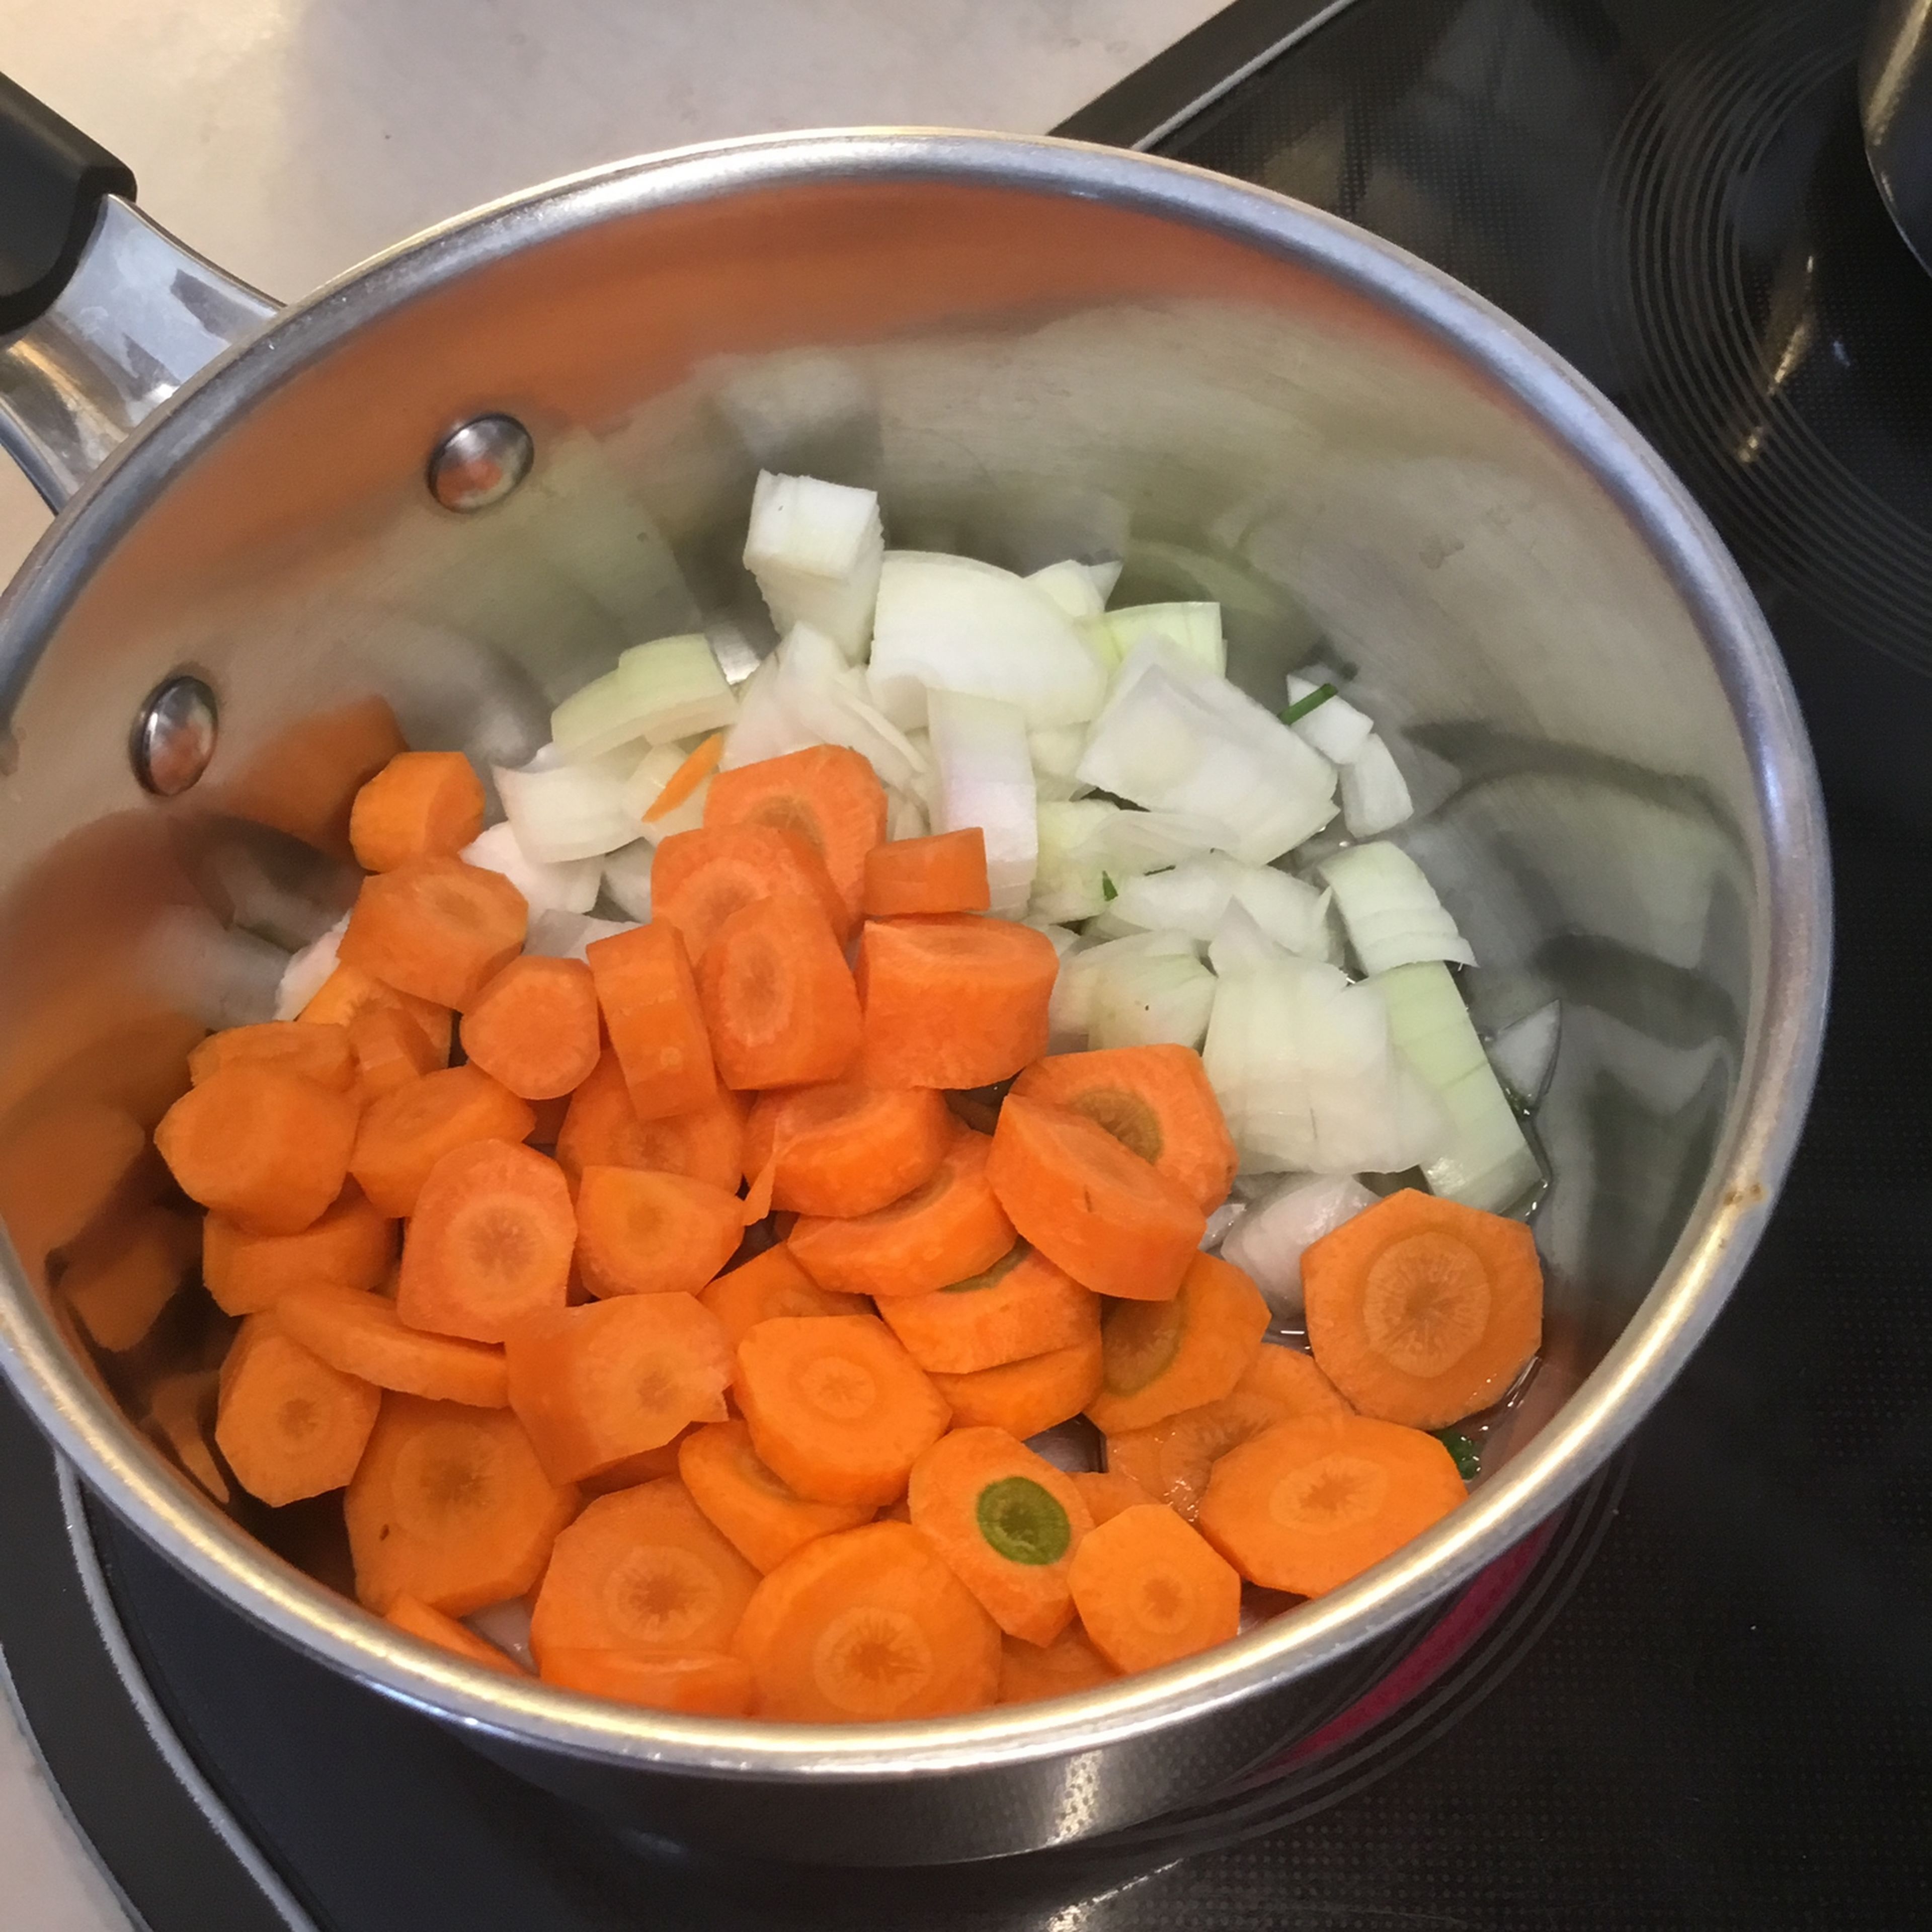 Während die Rouladen schmurgeln kann man die Karotten/Gemüsebeilage fertig machen. Karotten und gewürfelte Zwiebel im Castrol andünsten.